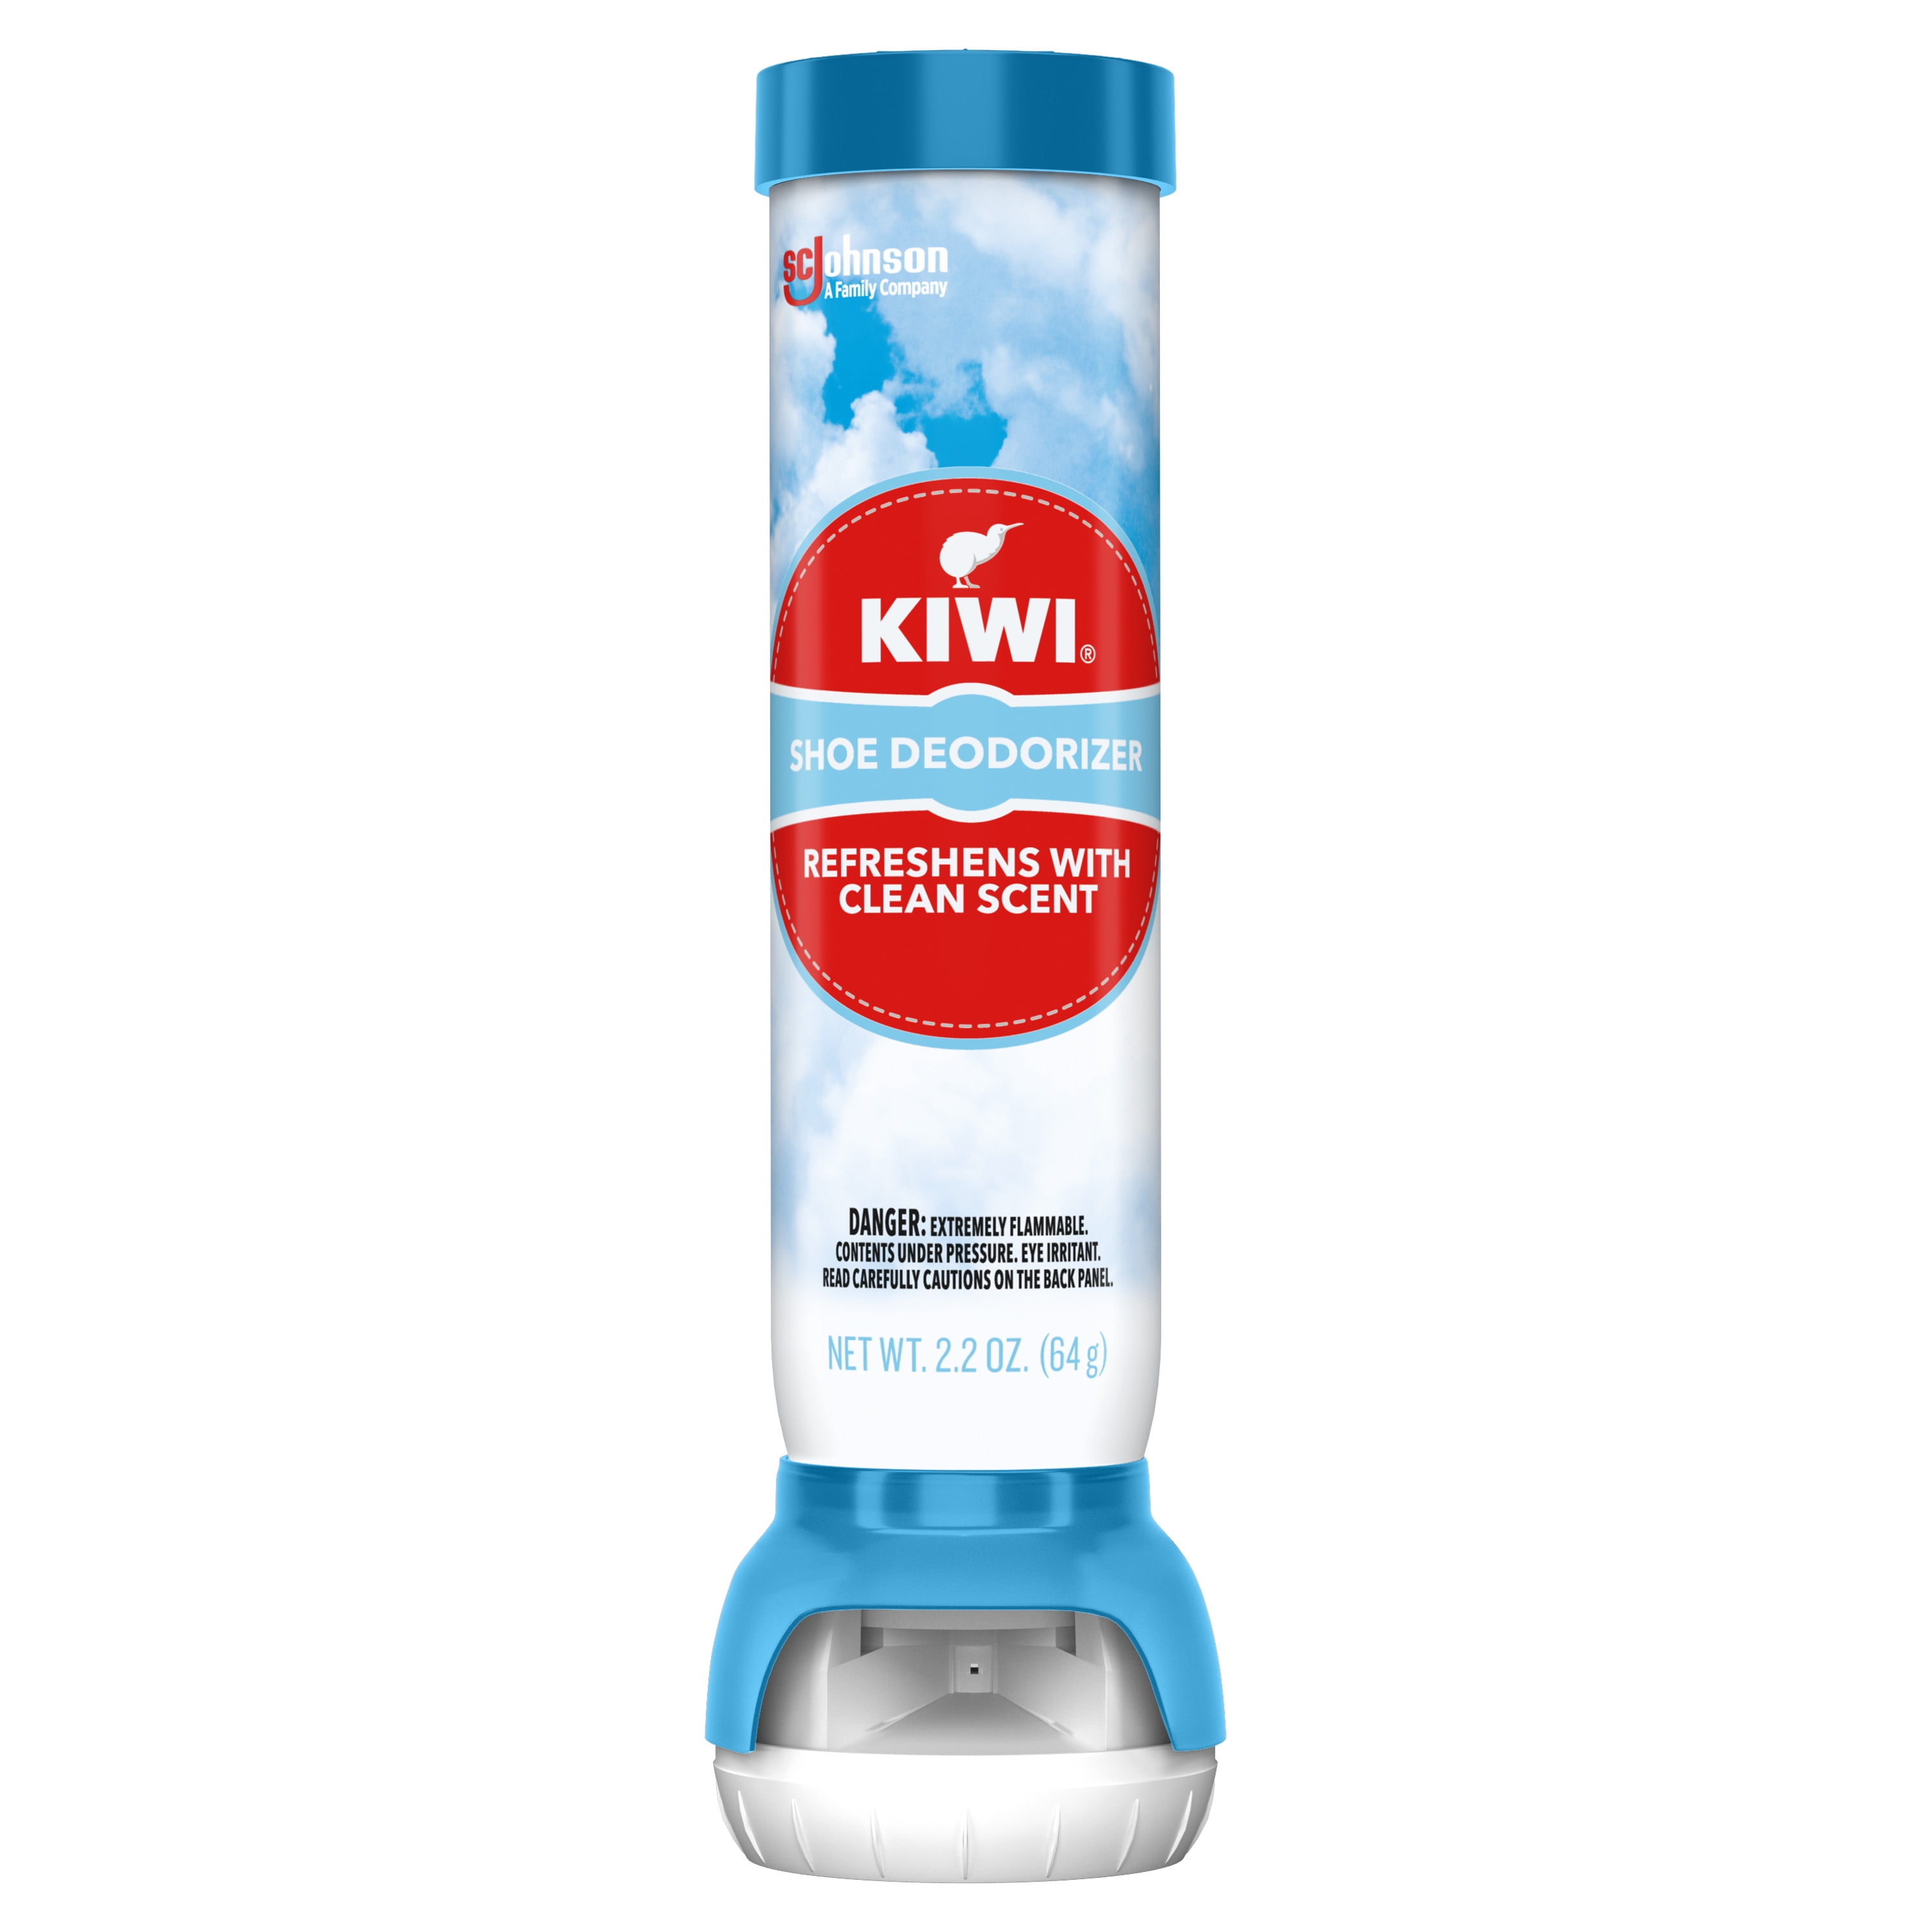 KIWI Shoe Deodorizer, 2.2 oz Aerosol Spray) - Walmart.com